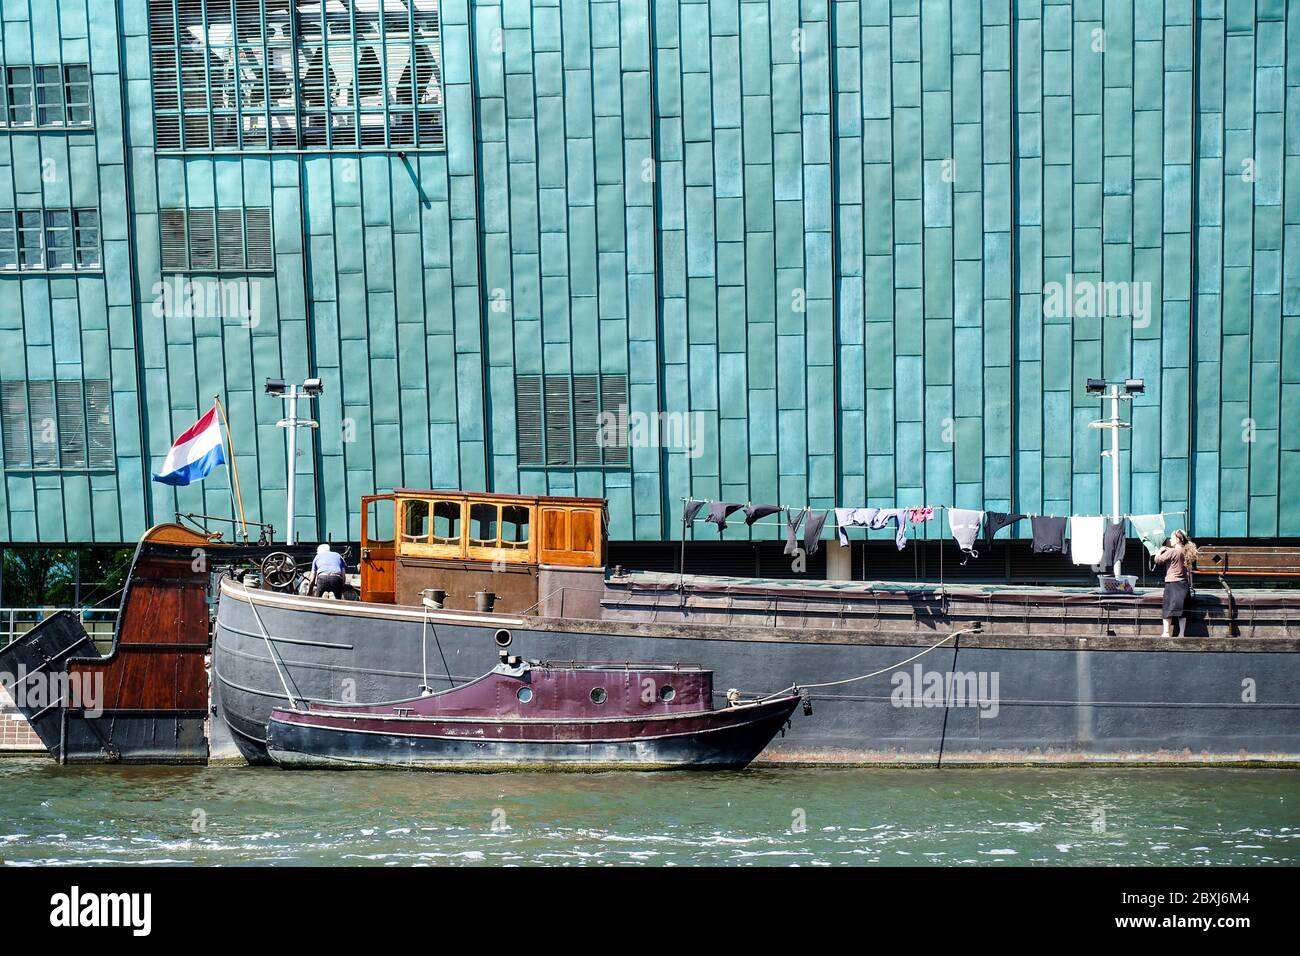 Nemo musée à Amsterdam, avec un bateau passant, un drapeau hollandais et un propriétaire de péniche séchage de blanchisserie Banque D'Images